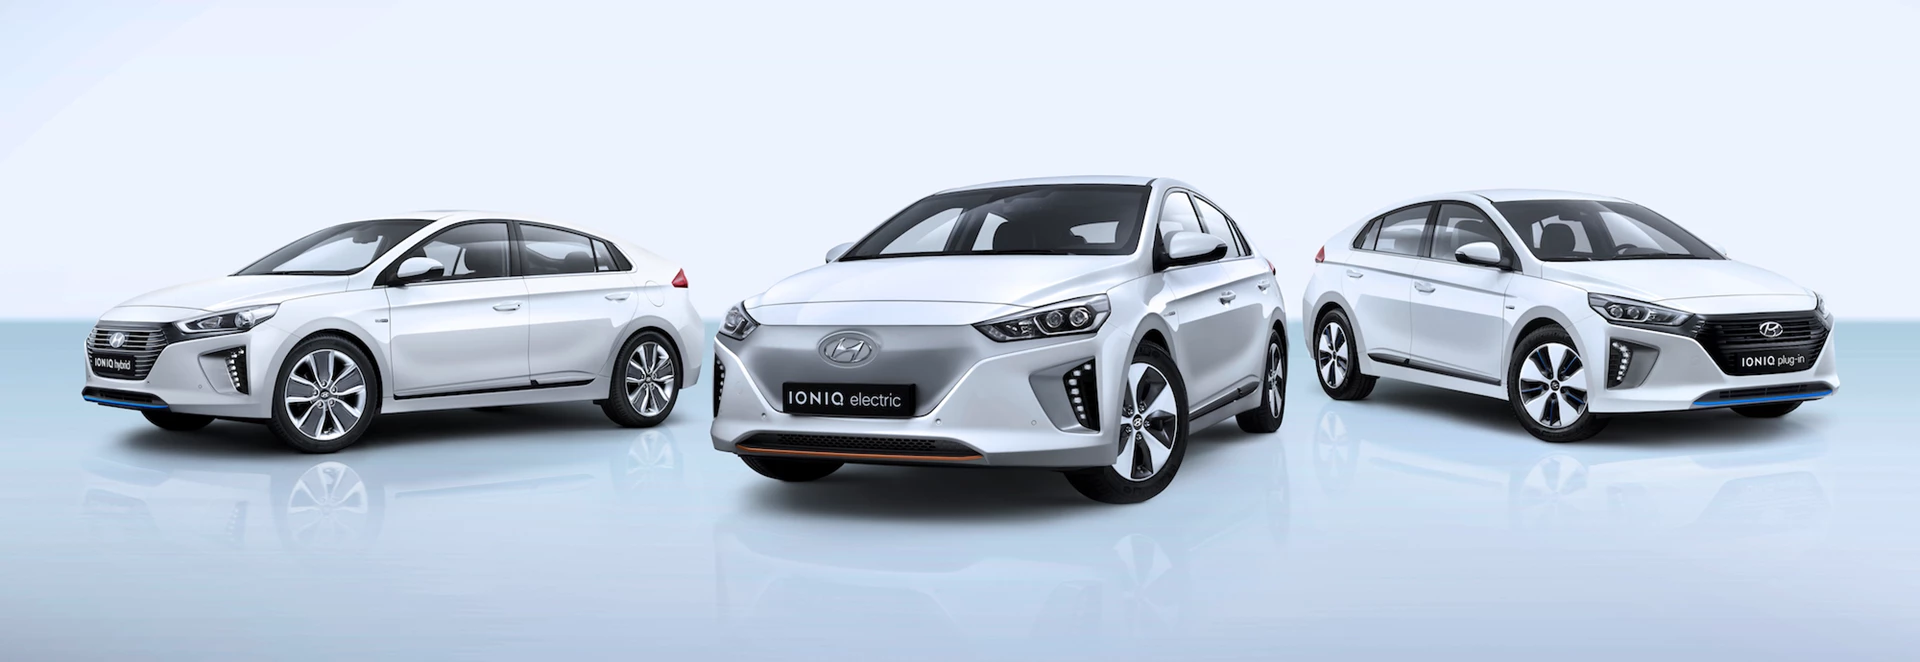 Hyundai named in top 10 UK car sales